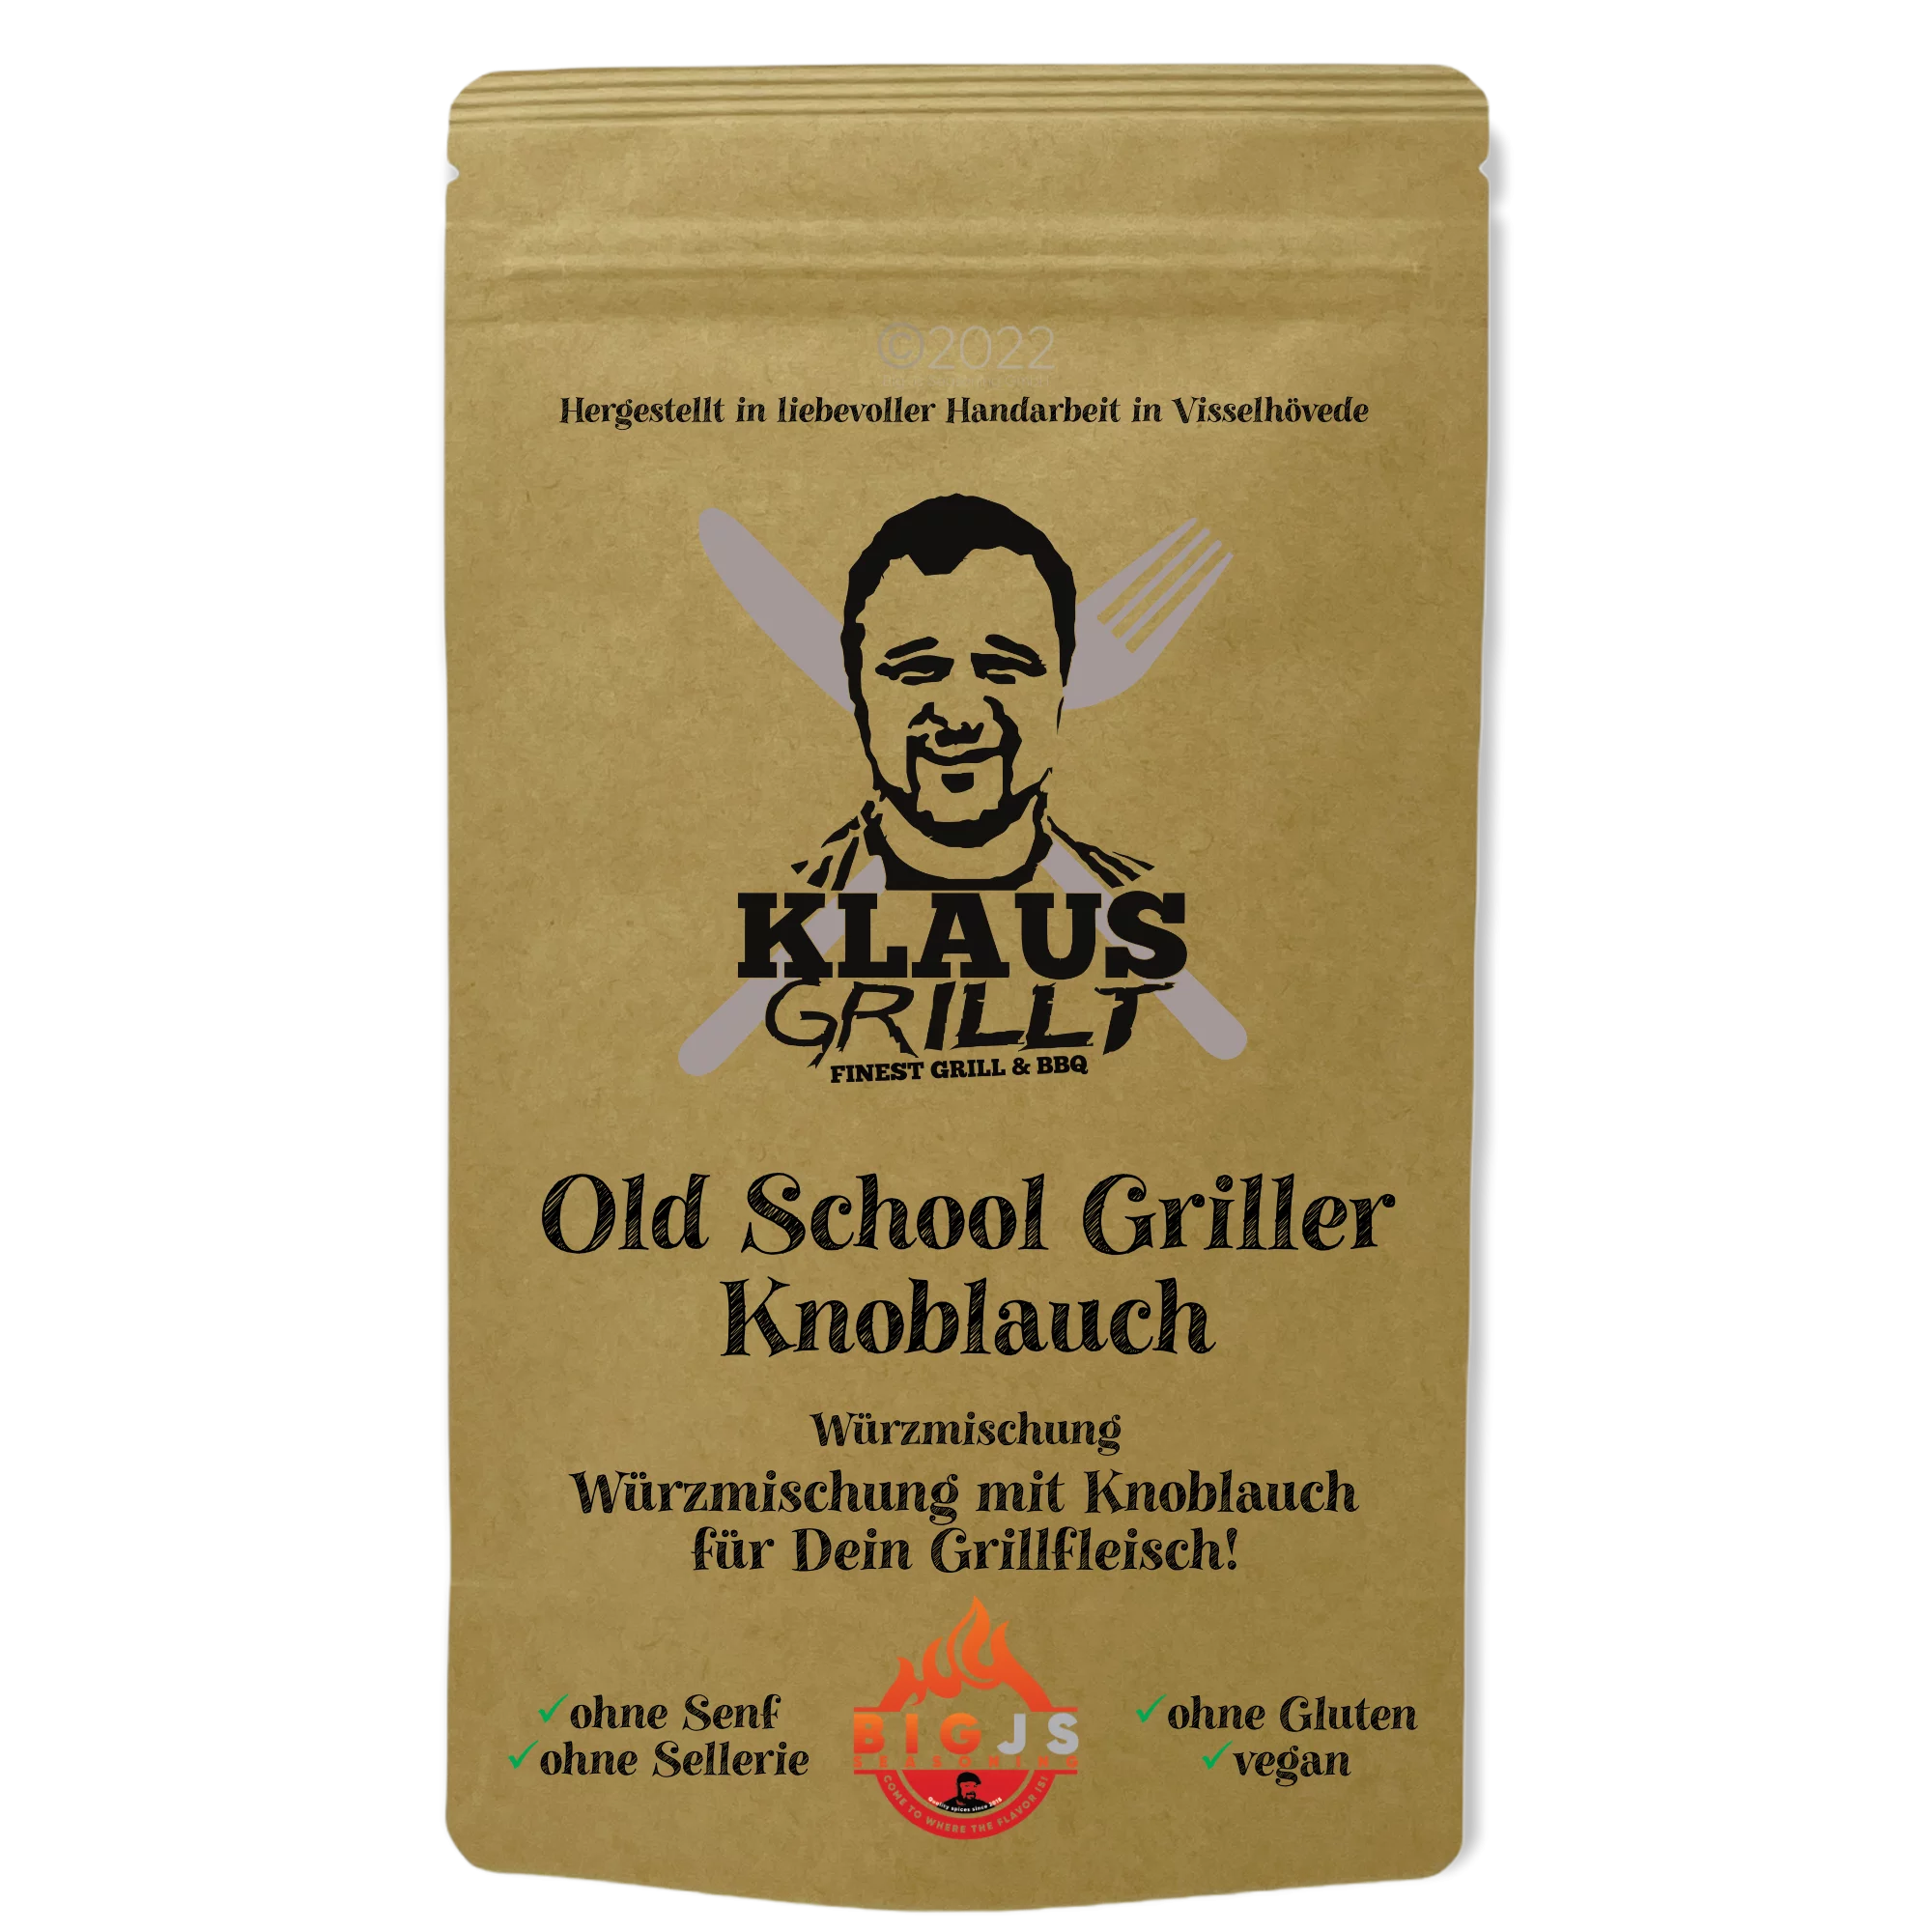 Klaus grillt Old School Griller Knoblauch, 250g Standbeutel